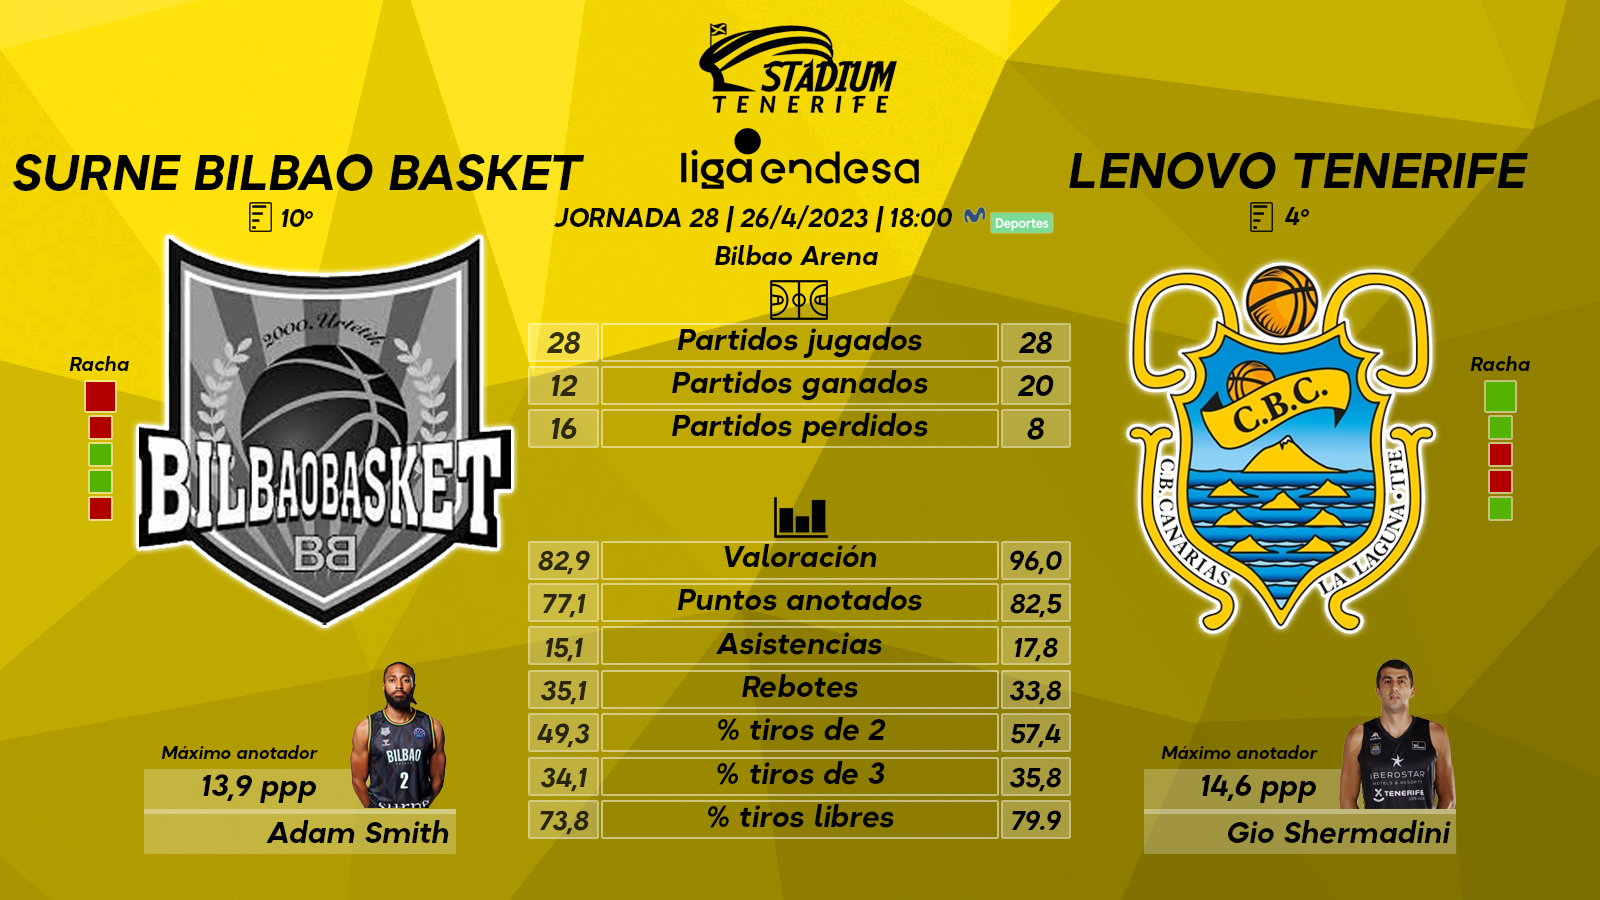 Previa del Surne Bilbao Basket – Lenovo Tenerife (Jª. 28 – Liga Endesa)